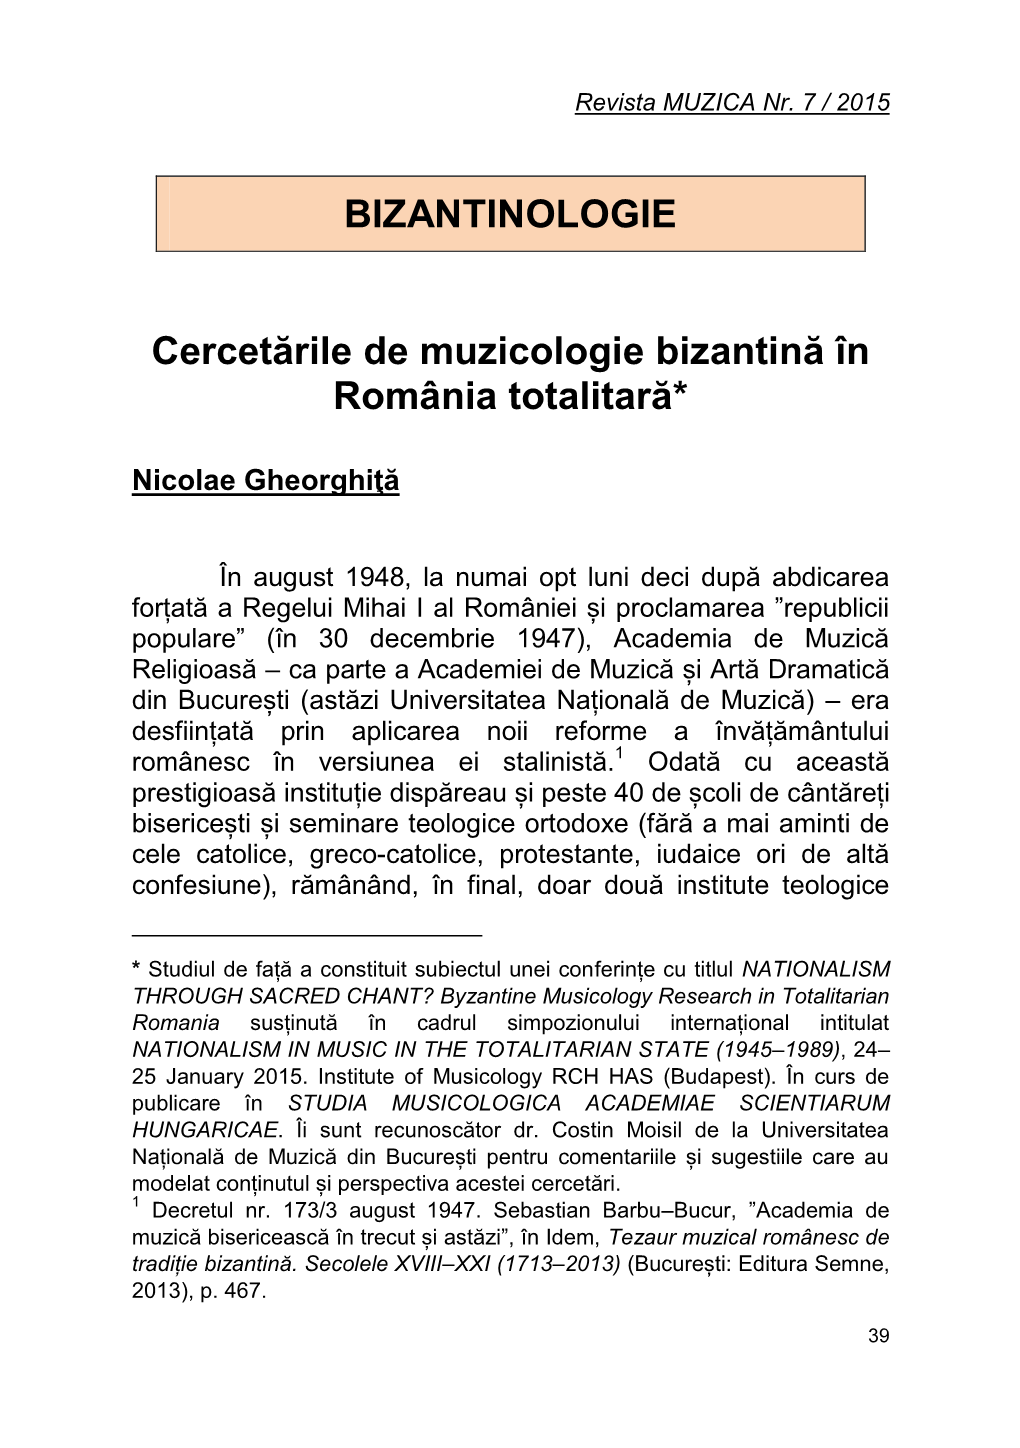 Cercetările De Muzicologie Bizantină În România Totalitară*